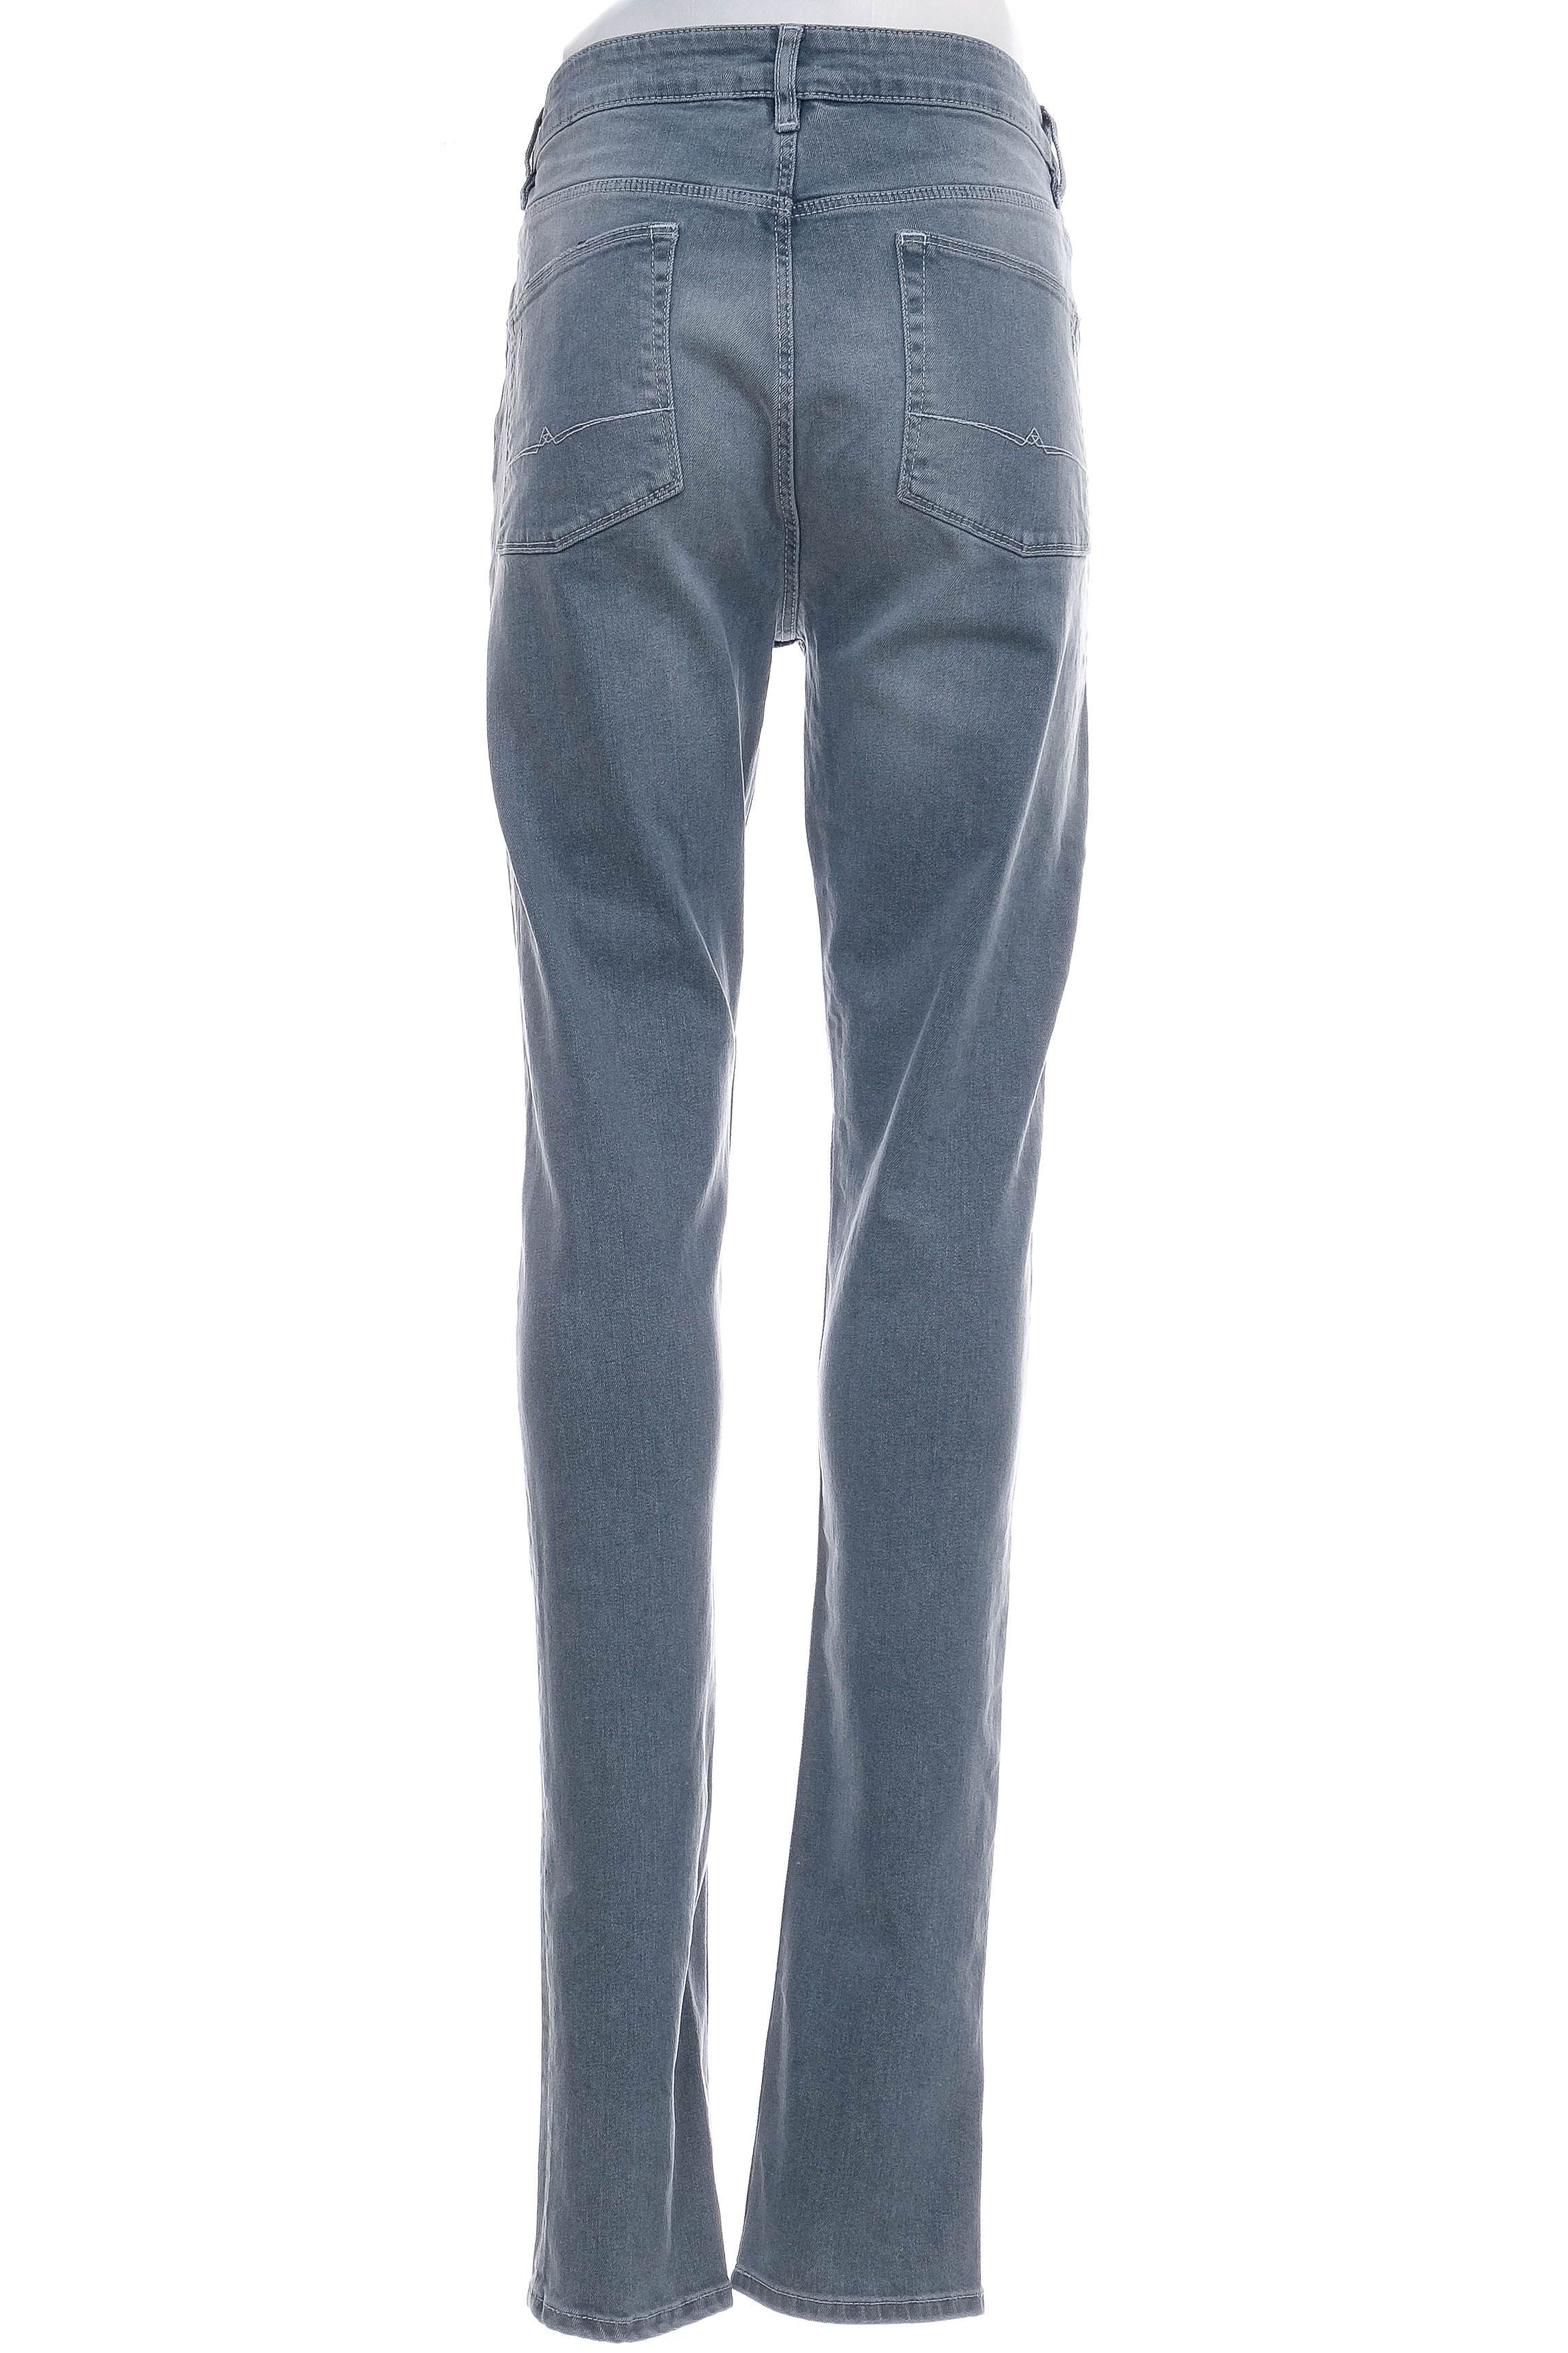 Jeans pentru bărbăți - Asos - 1